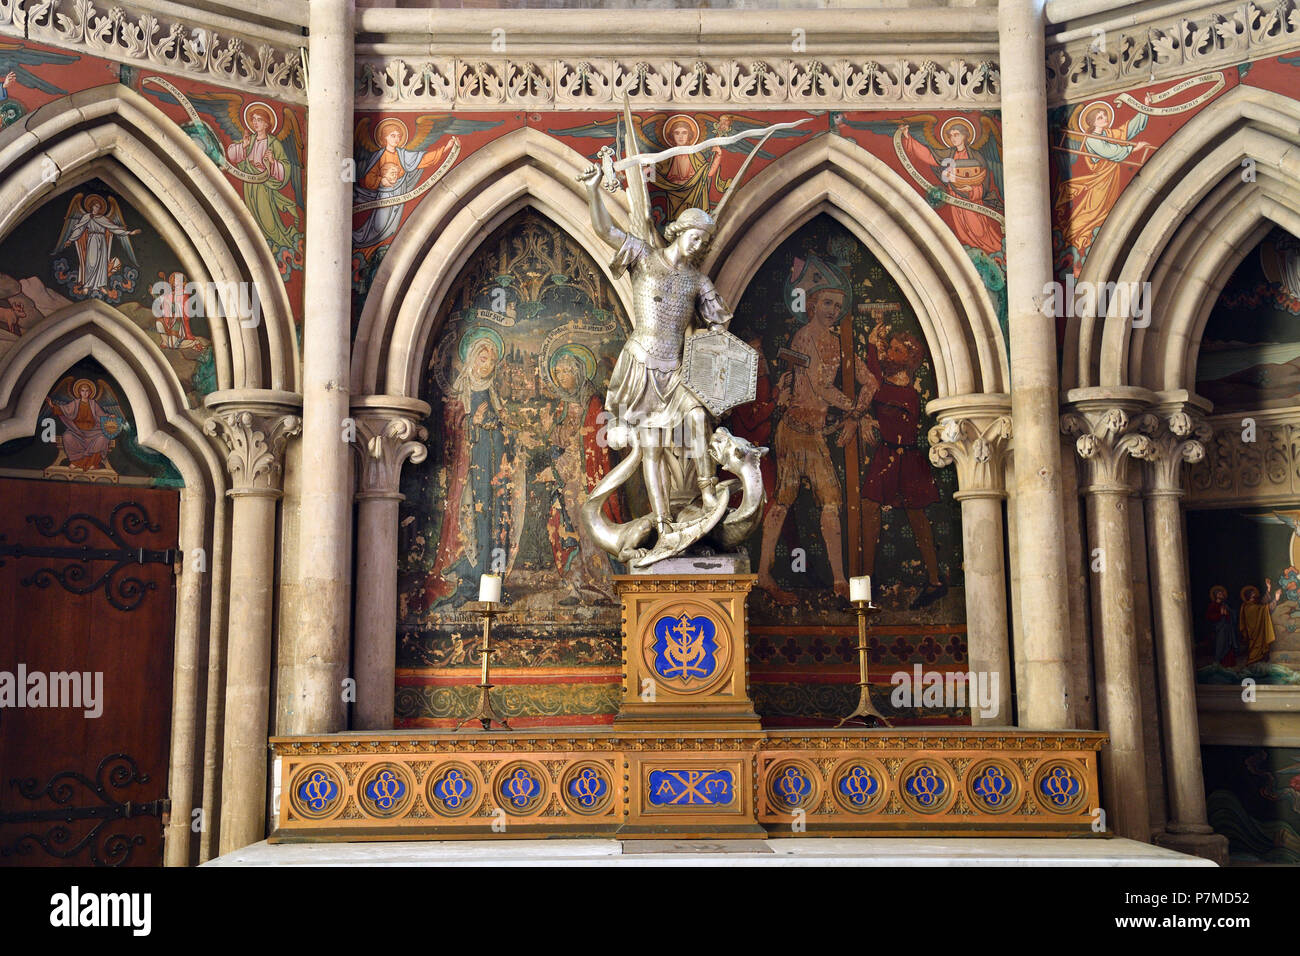 France, Calvados, Bayeux, cathédrale Notre-Dame, datée du 11e au 15e siècle, chapelle de St Michel et St Blaise, statue de Saint Michel terrassant le dragon Banque D'Images